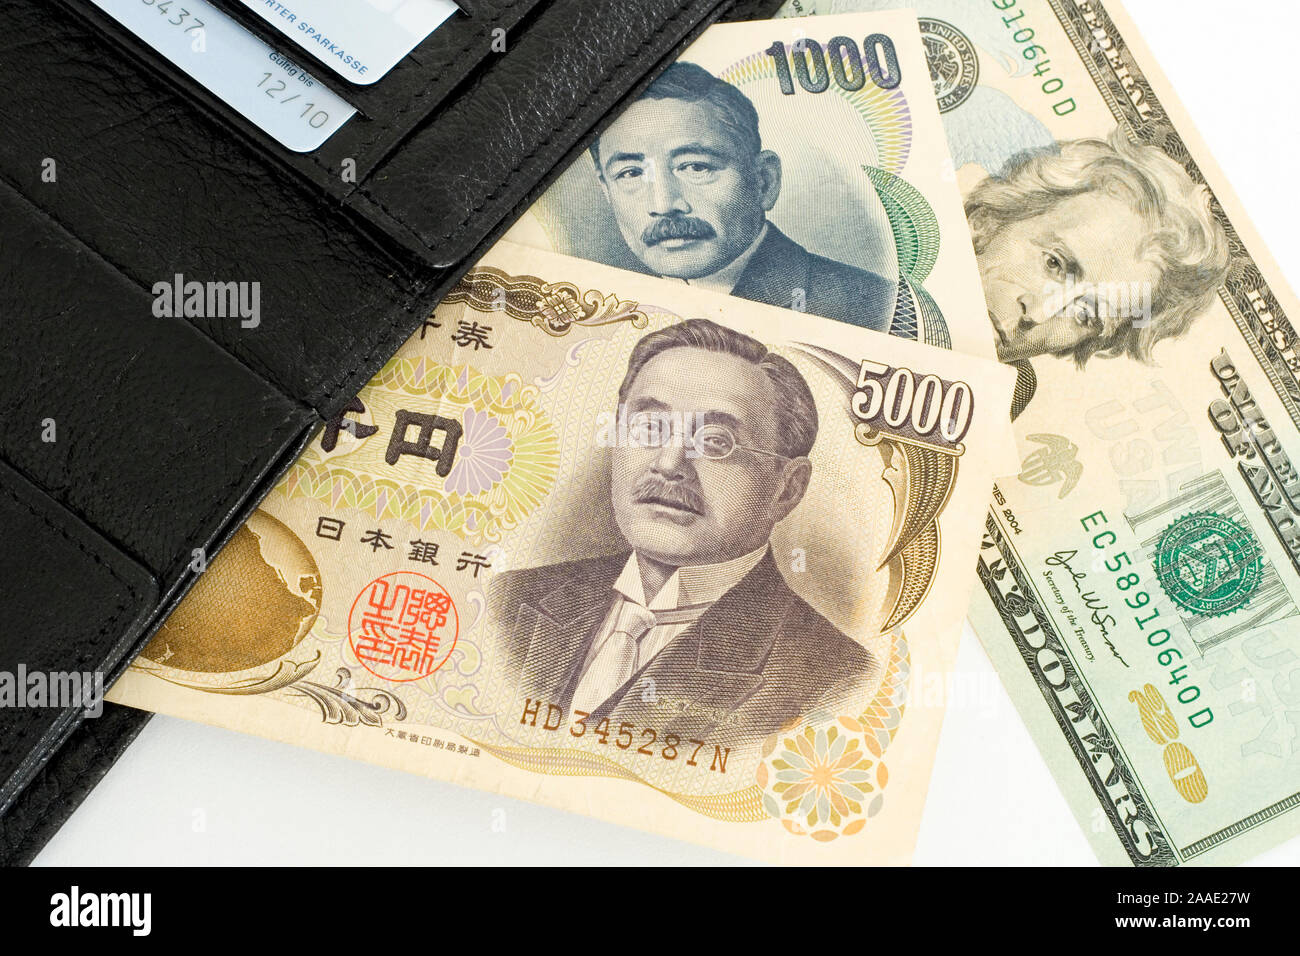 Geldscheine in japanischen Yen und US-amerikansichen Dollar (no pr) Stock Photo